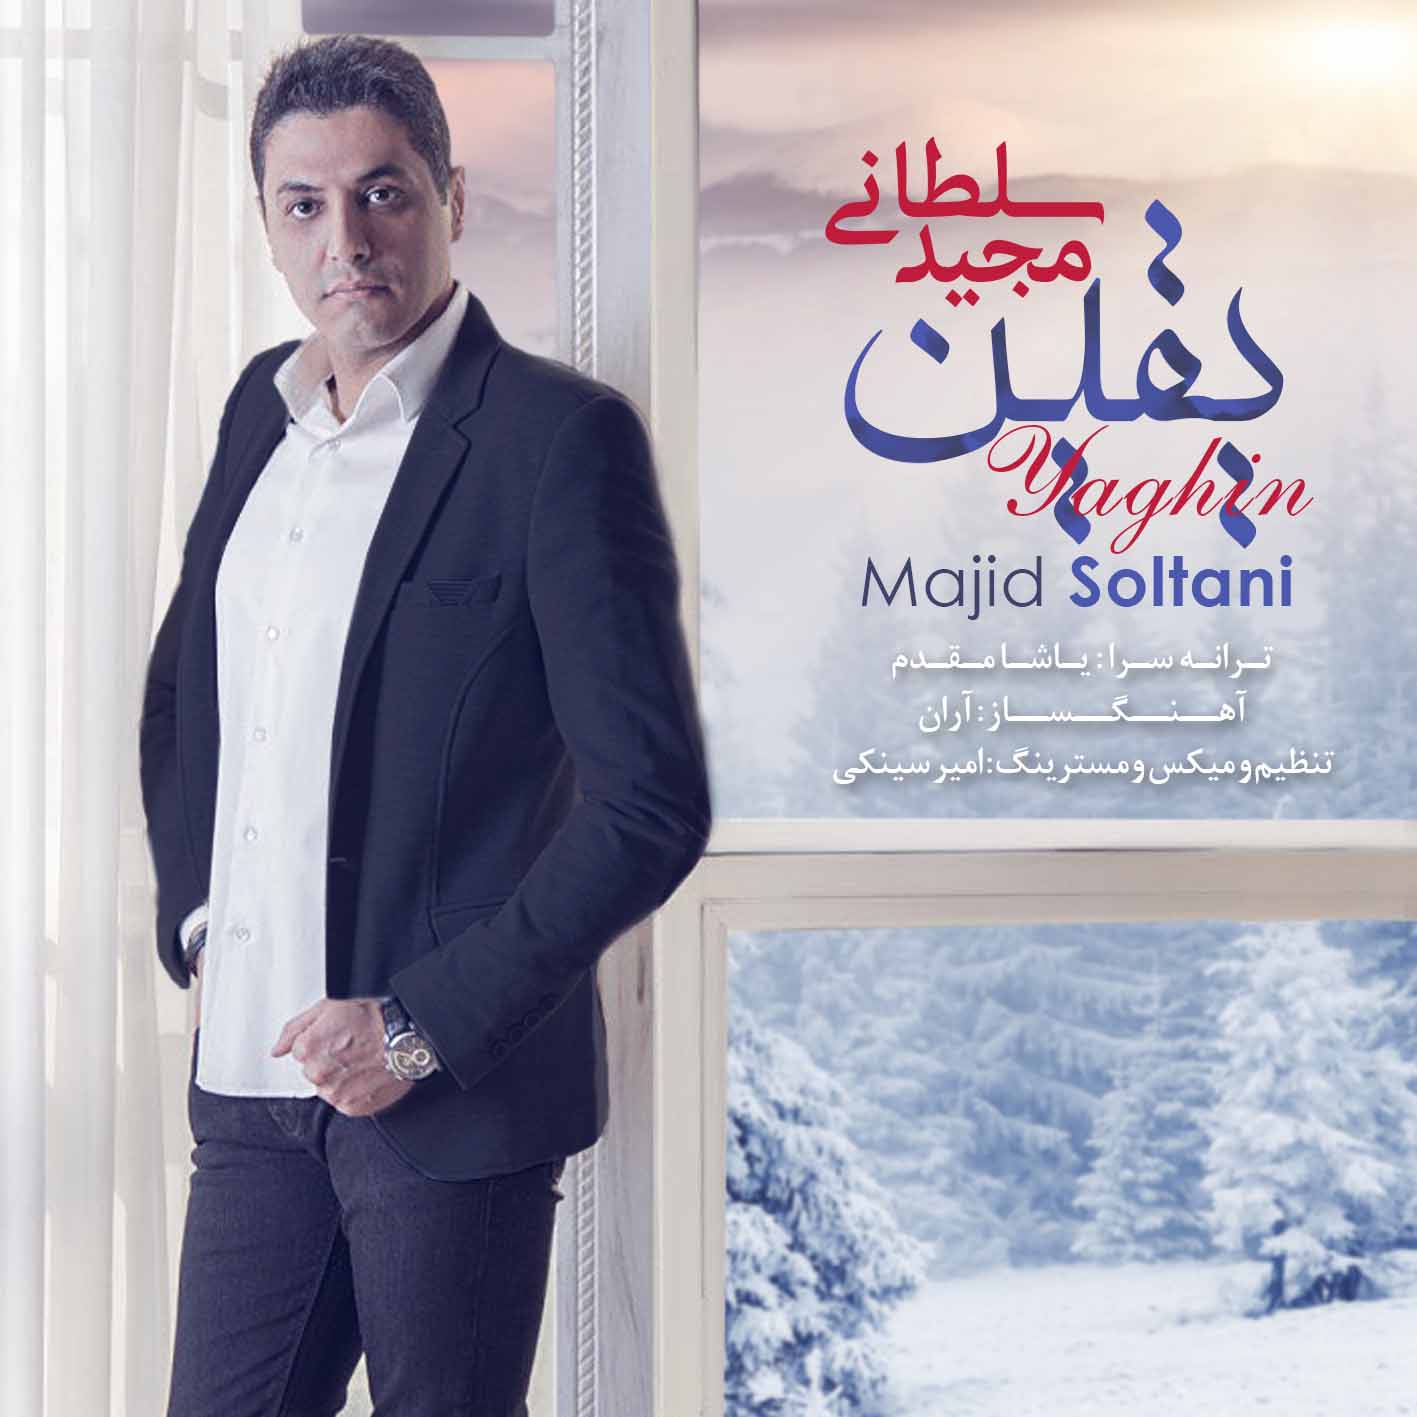  دانلود آهنگ جدید مجید سلطانی - یقین | Download New Music By Majid Soltani - Yaghin